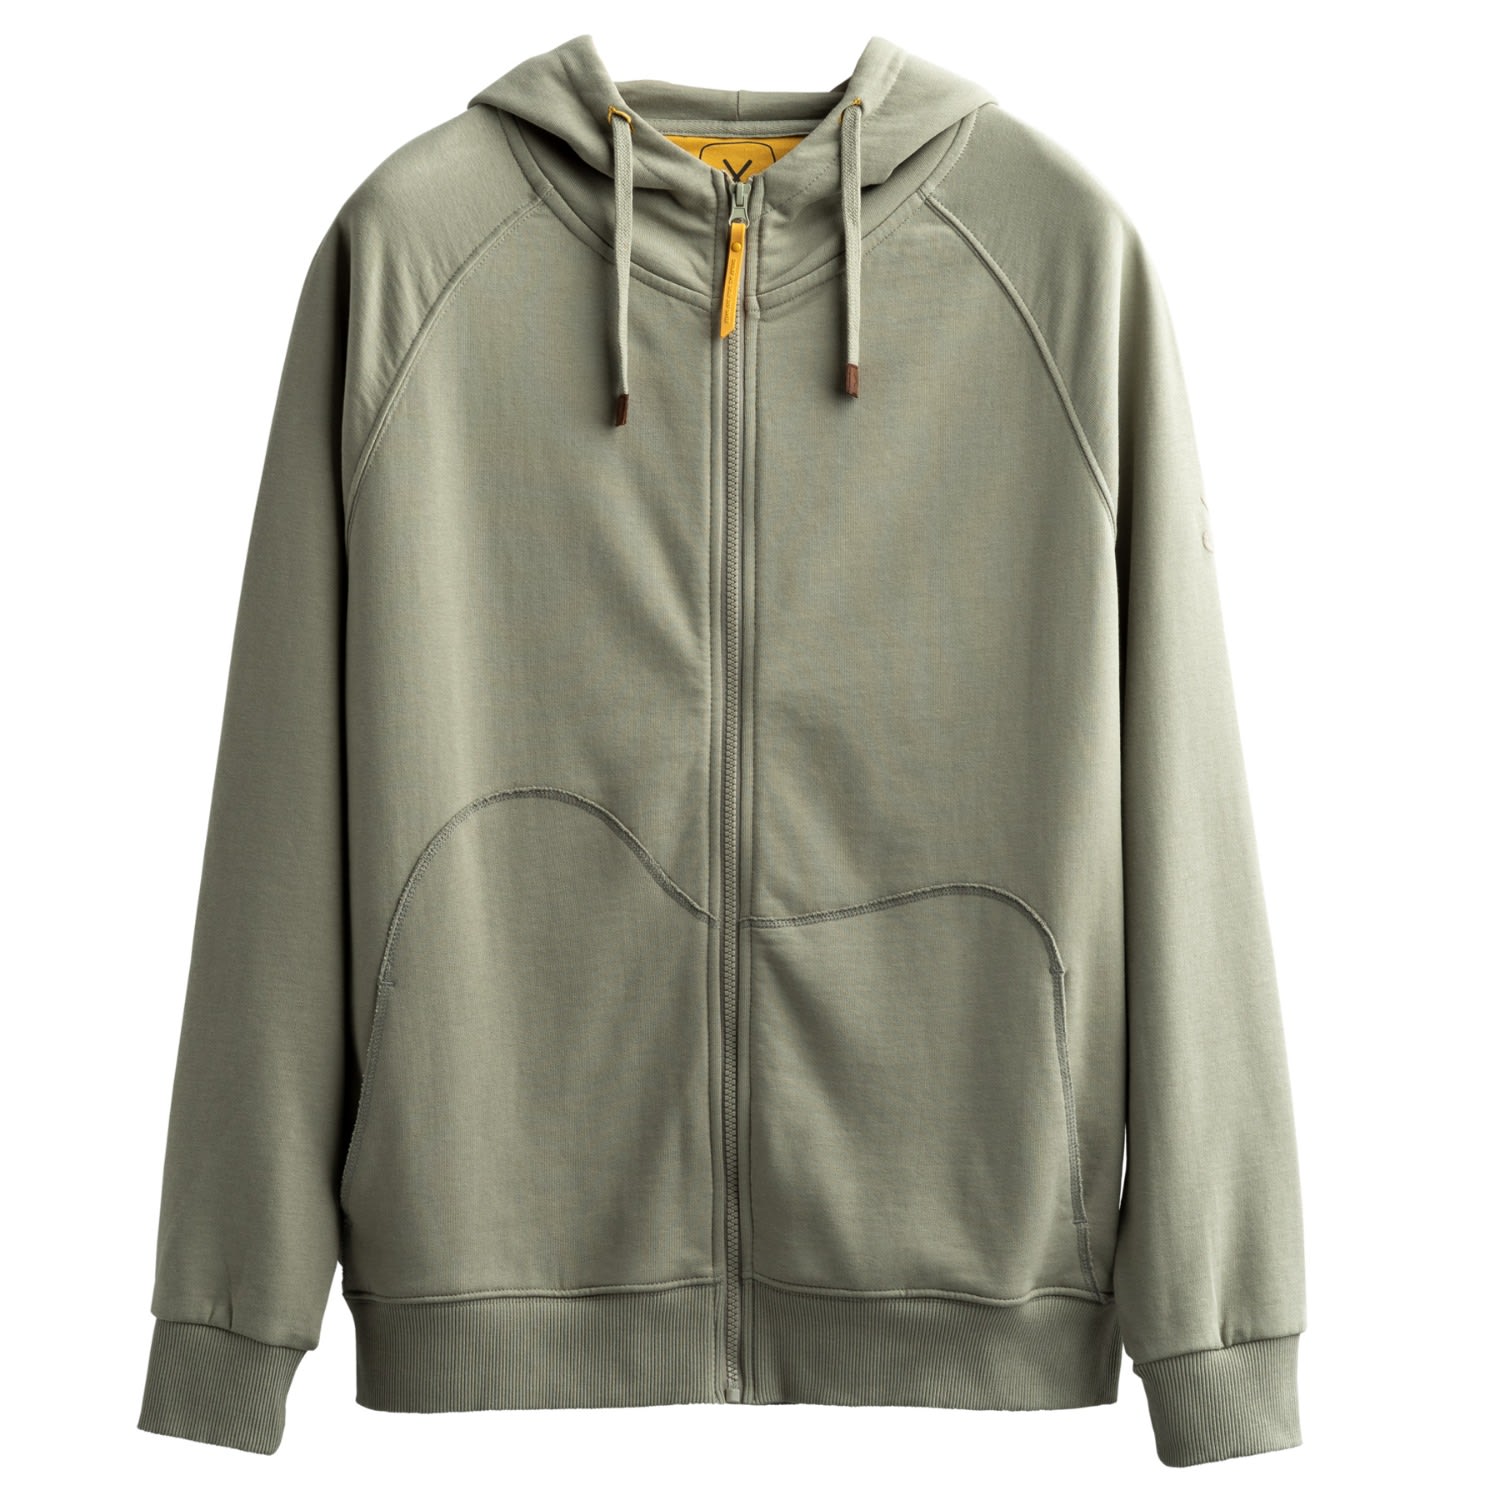 Men's Grey Unisex Design Zip Hoodie Sweatshirt - Zipper - Concrete Extra Small KAFT